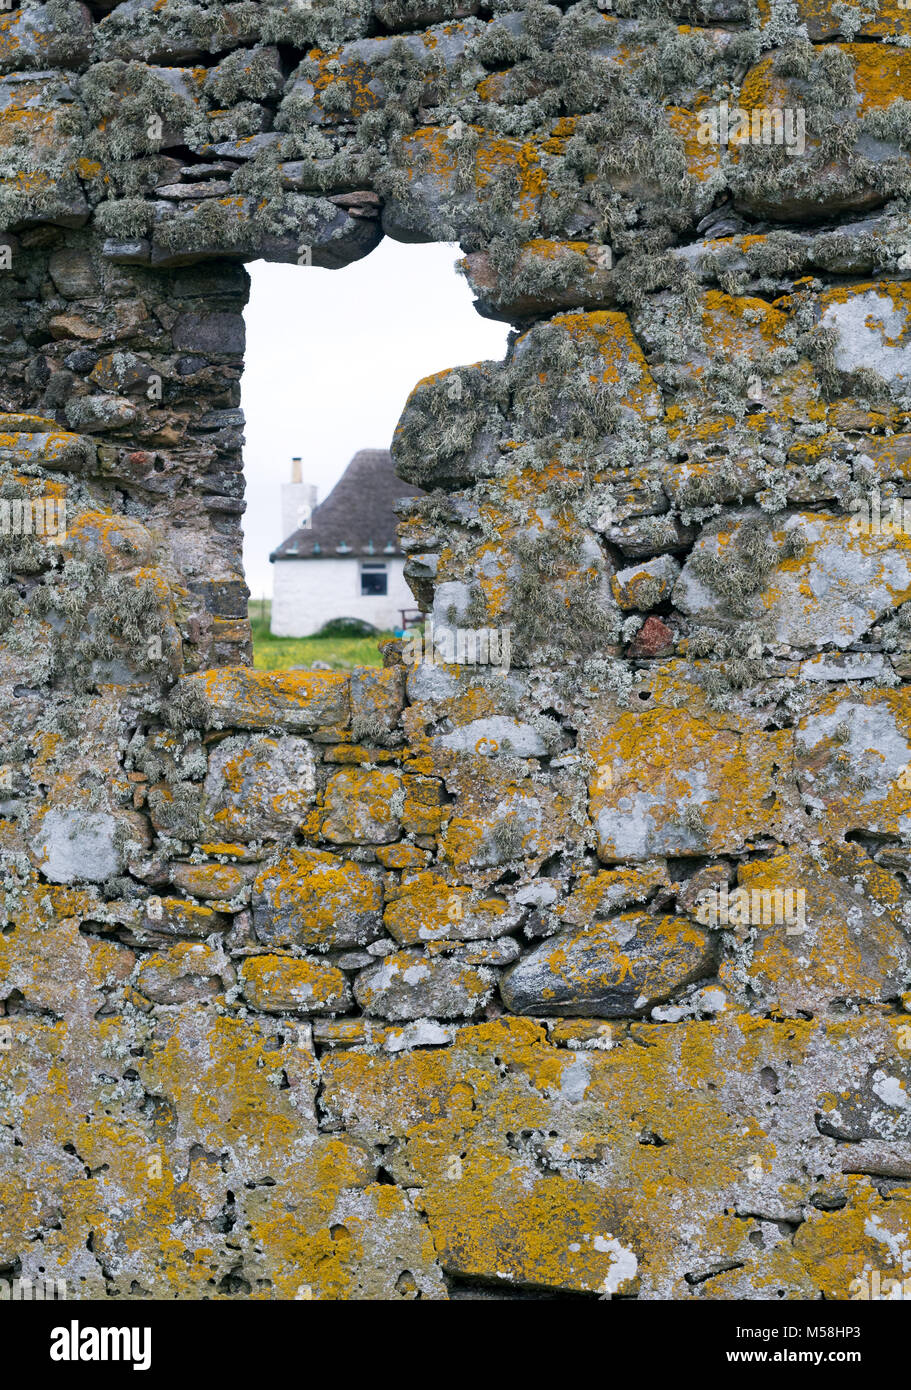 Choza de piedra blanca de Howmore Gatliff Hostel,fotografiados fro cercano monasterio del siglo XIII, la isla de South Uist, Hébridas Exteriores, Escocia, Reino Unido Foto de stock